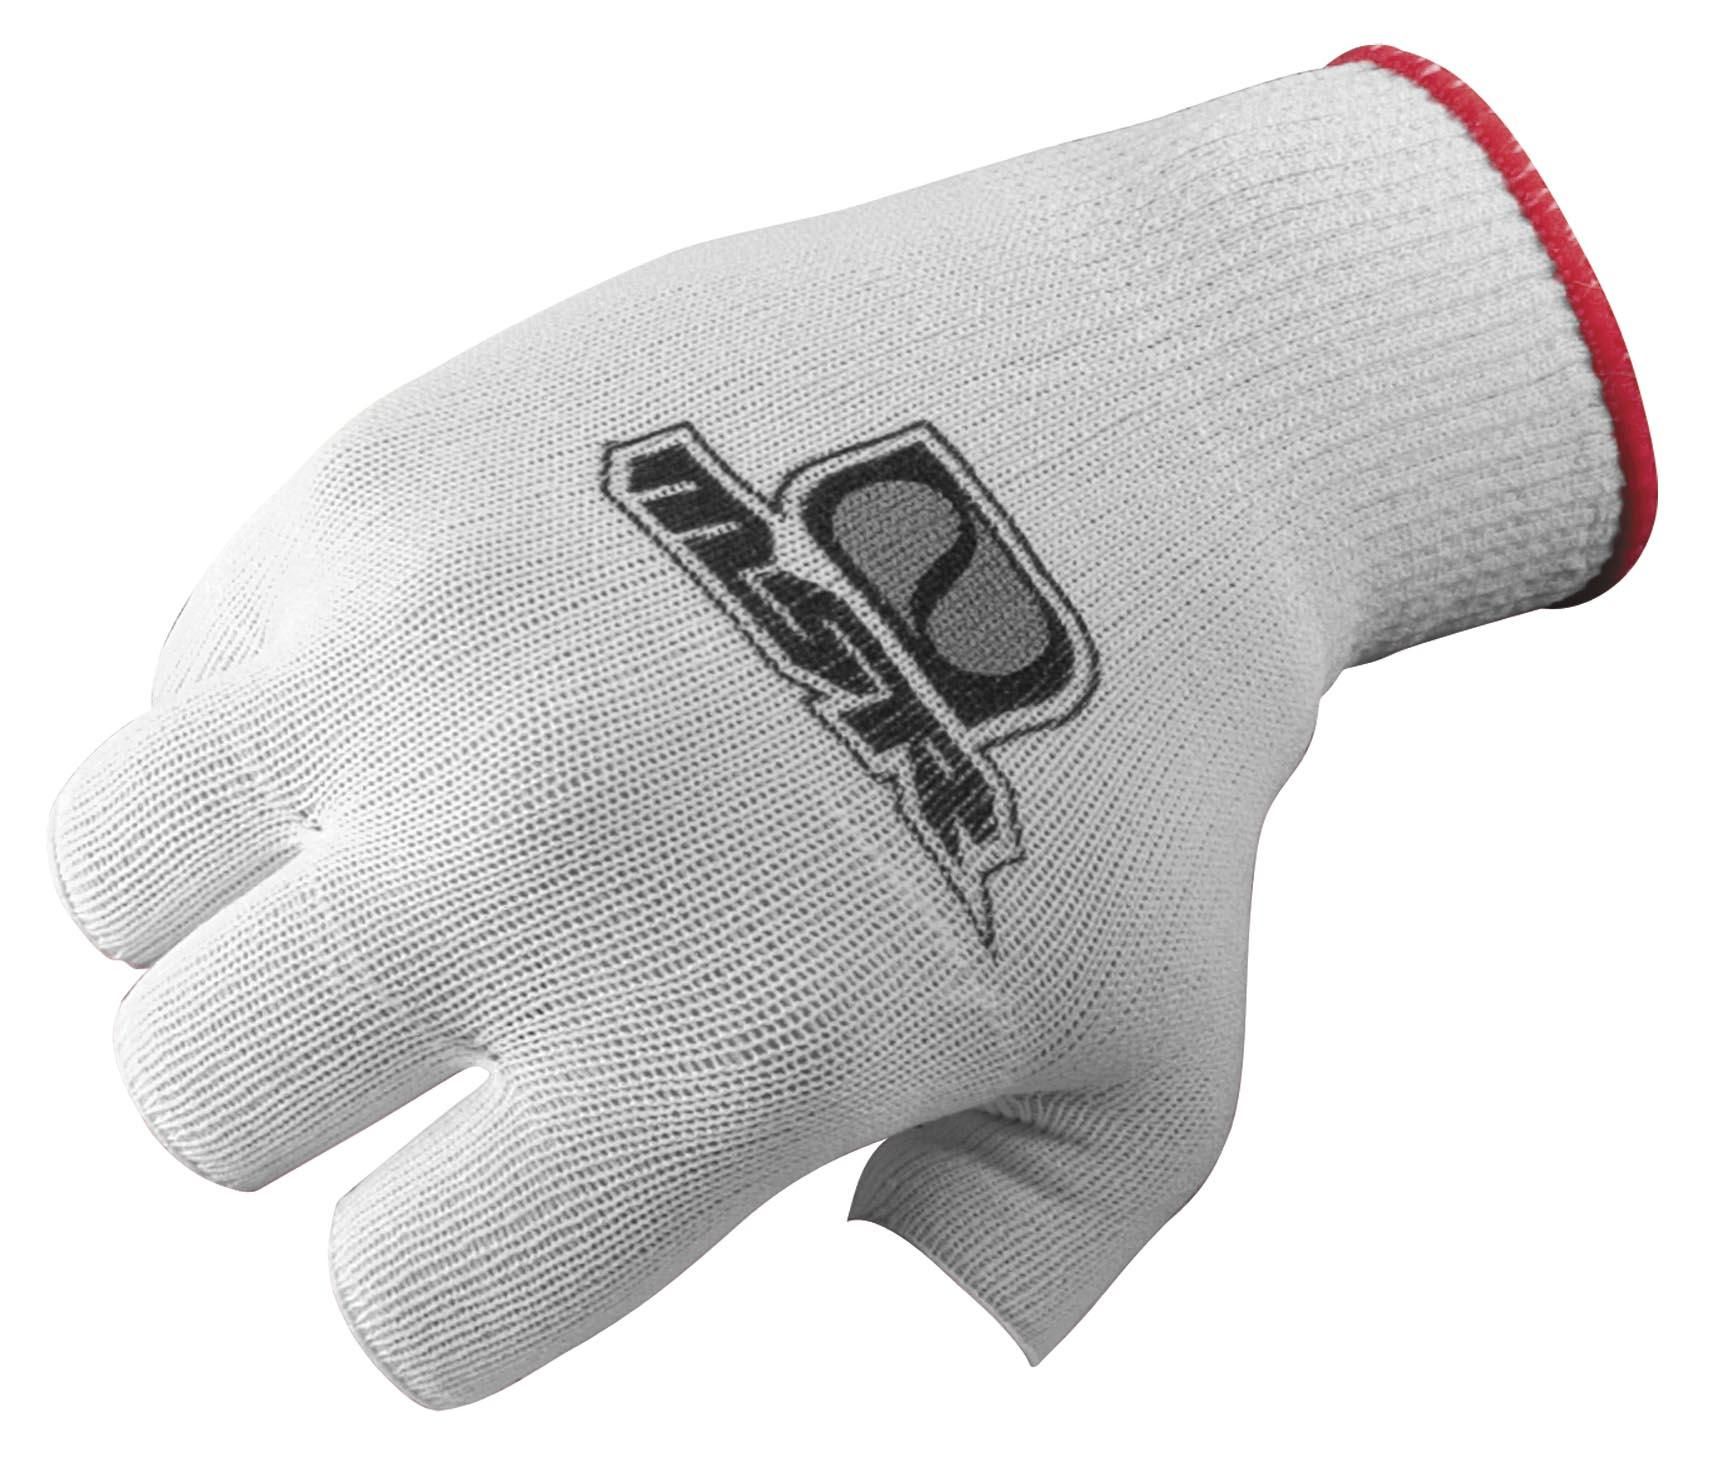 45RT-MSR-349094 Glove Liner - Half Finger